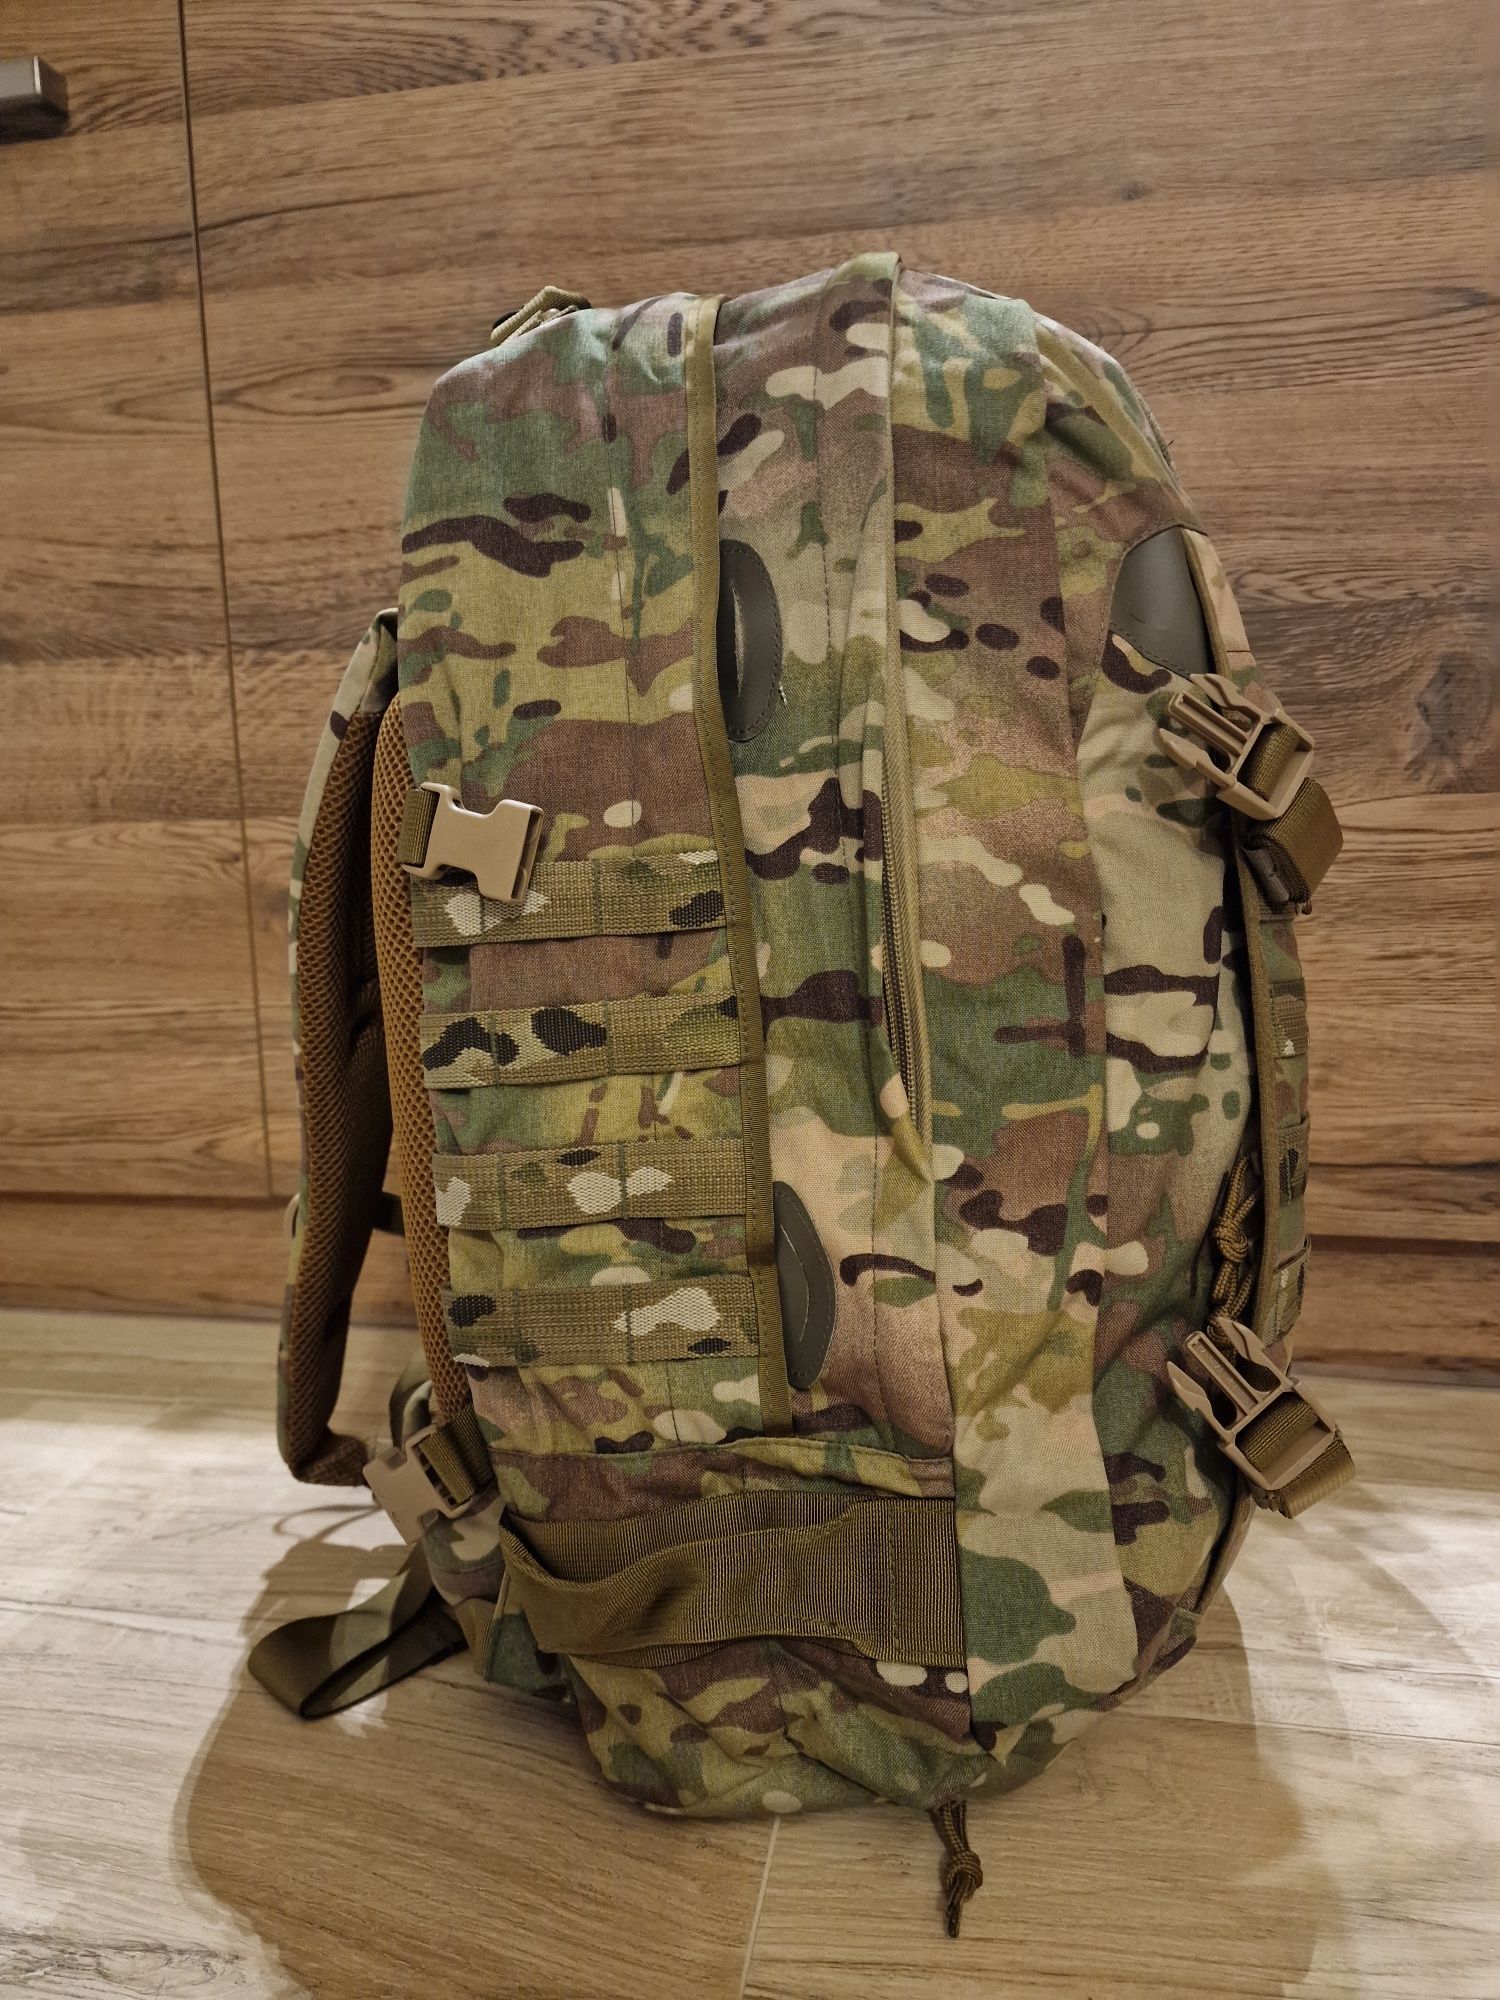 Plecak patrolowy Wojsk Specjalnych